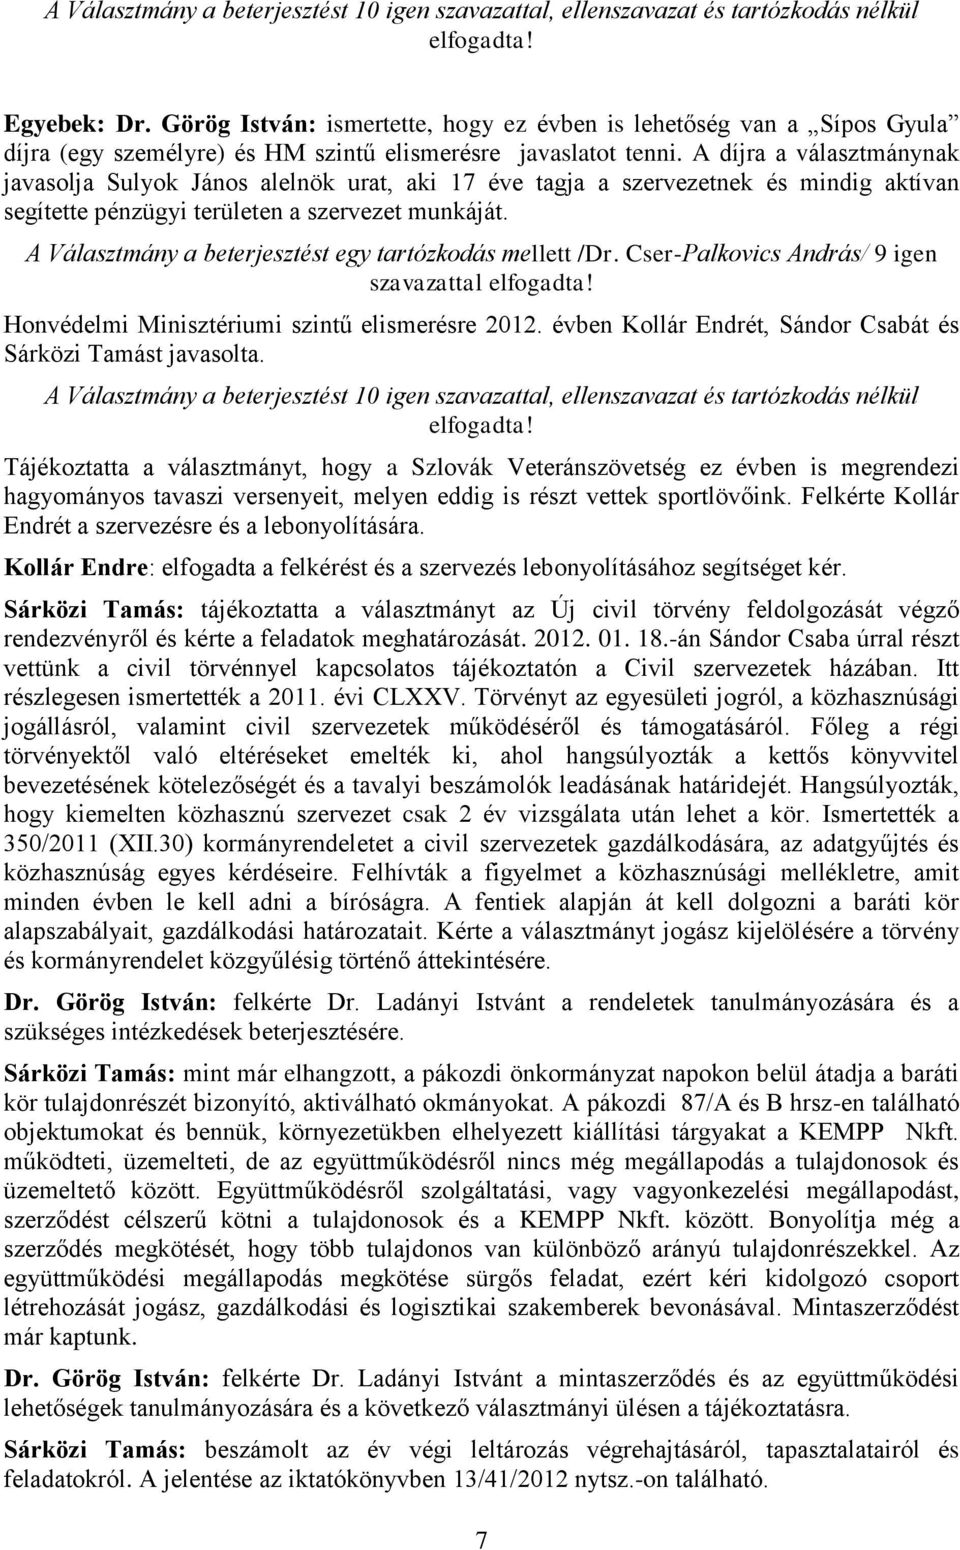 A Választmány a beterjesztést egy tartózkodás mellett /Dr. Cser-Palkovics András/ 9 igen szavazattal Honvédelmi Minisztériumi szintű elismerésre 2012.